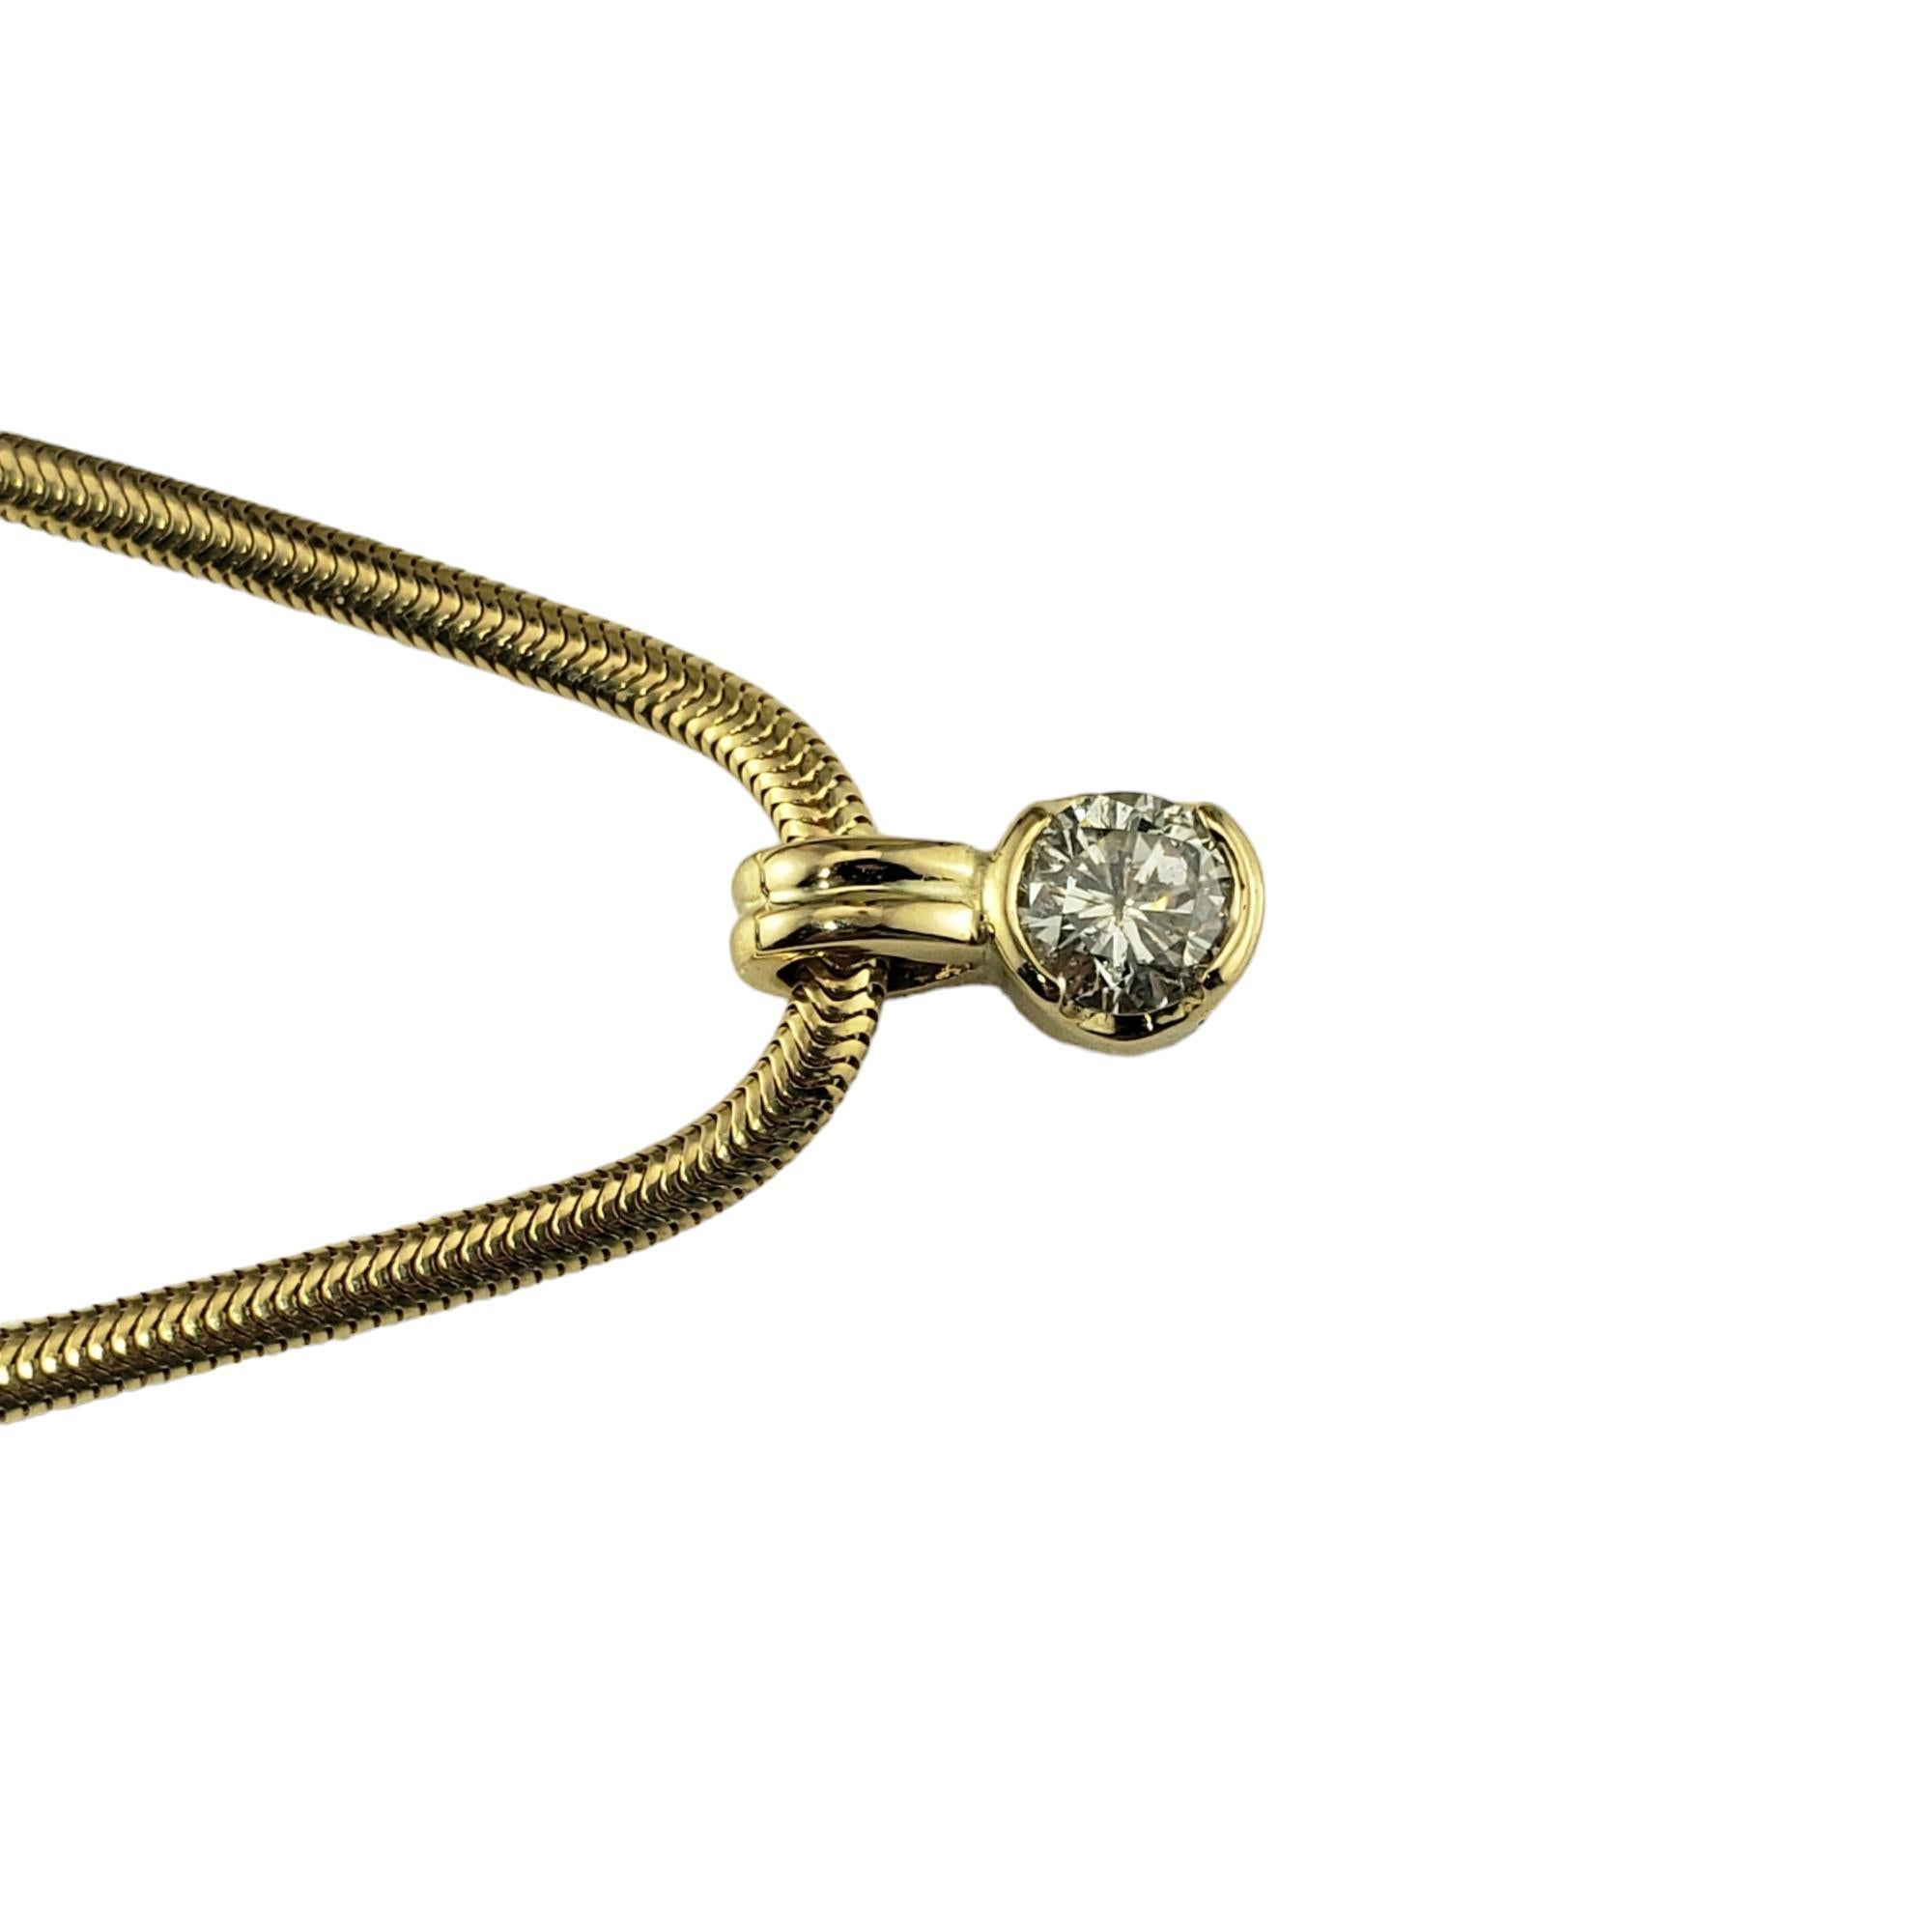 Vintage 14K Yellow Gold Diamond Pendant Necklace-

Ce ravissant pendentif présente un diamant rond de taille brillant serti dans un collier classique à chaîne serpent.

Poids total approximatif des diamants : 50 ct.

Couleur du diamant : I

Clarté